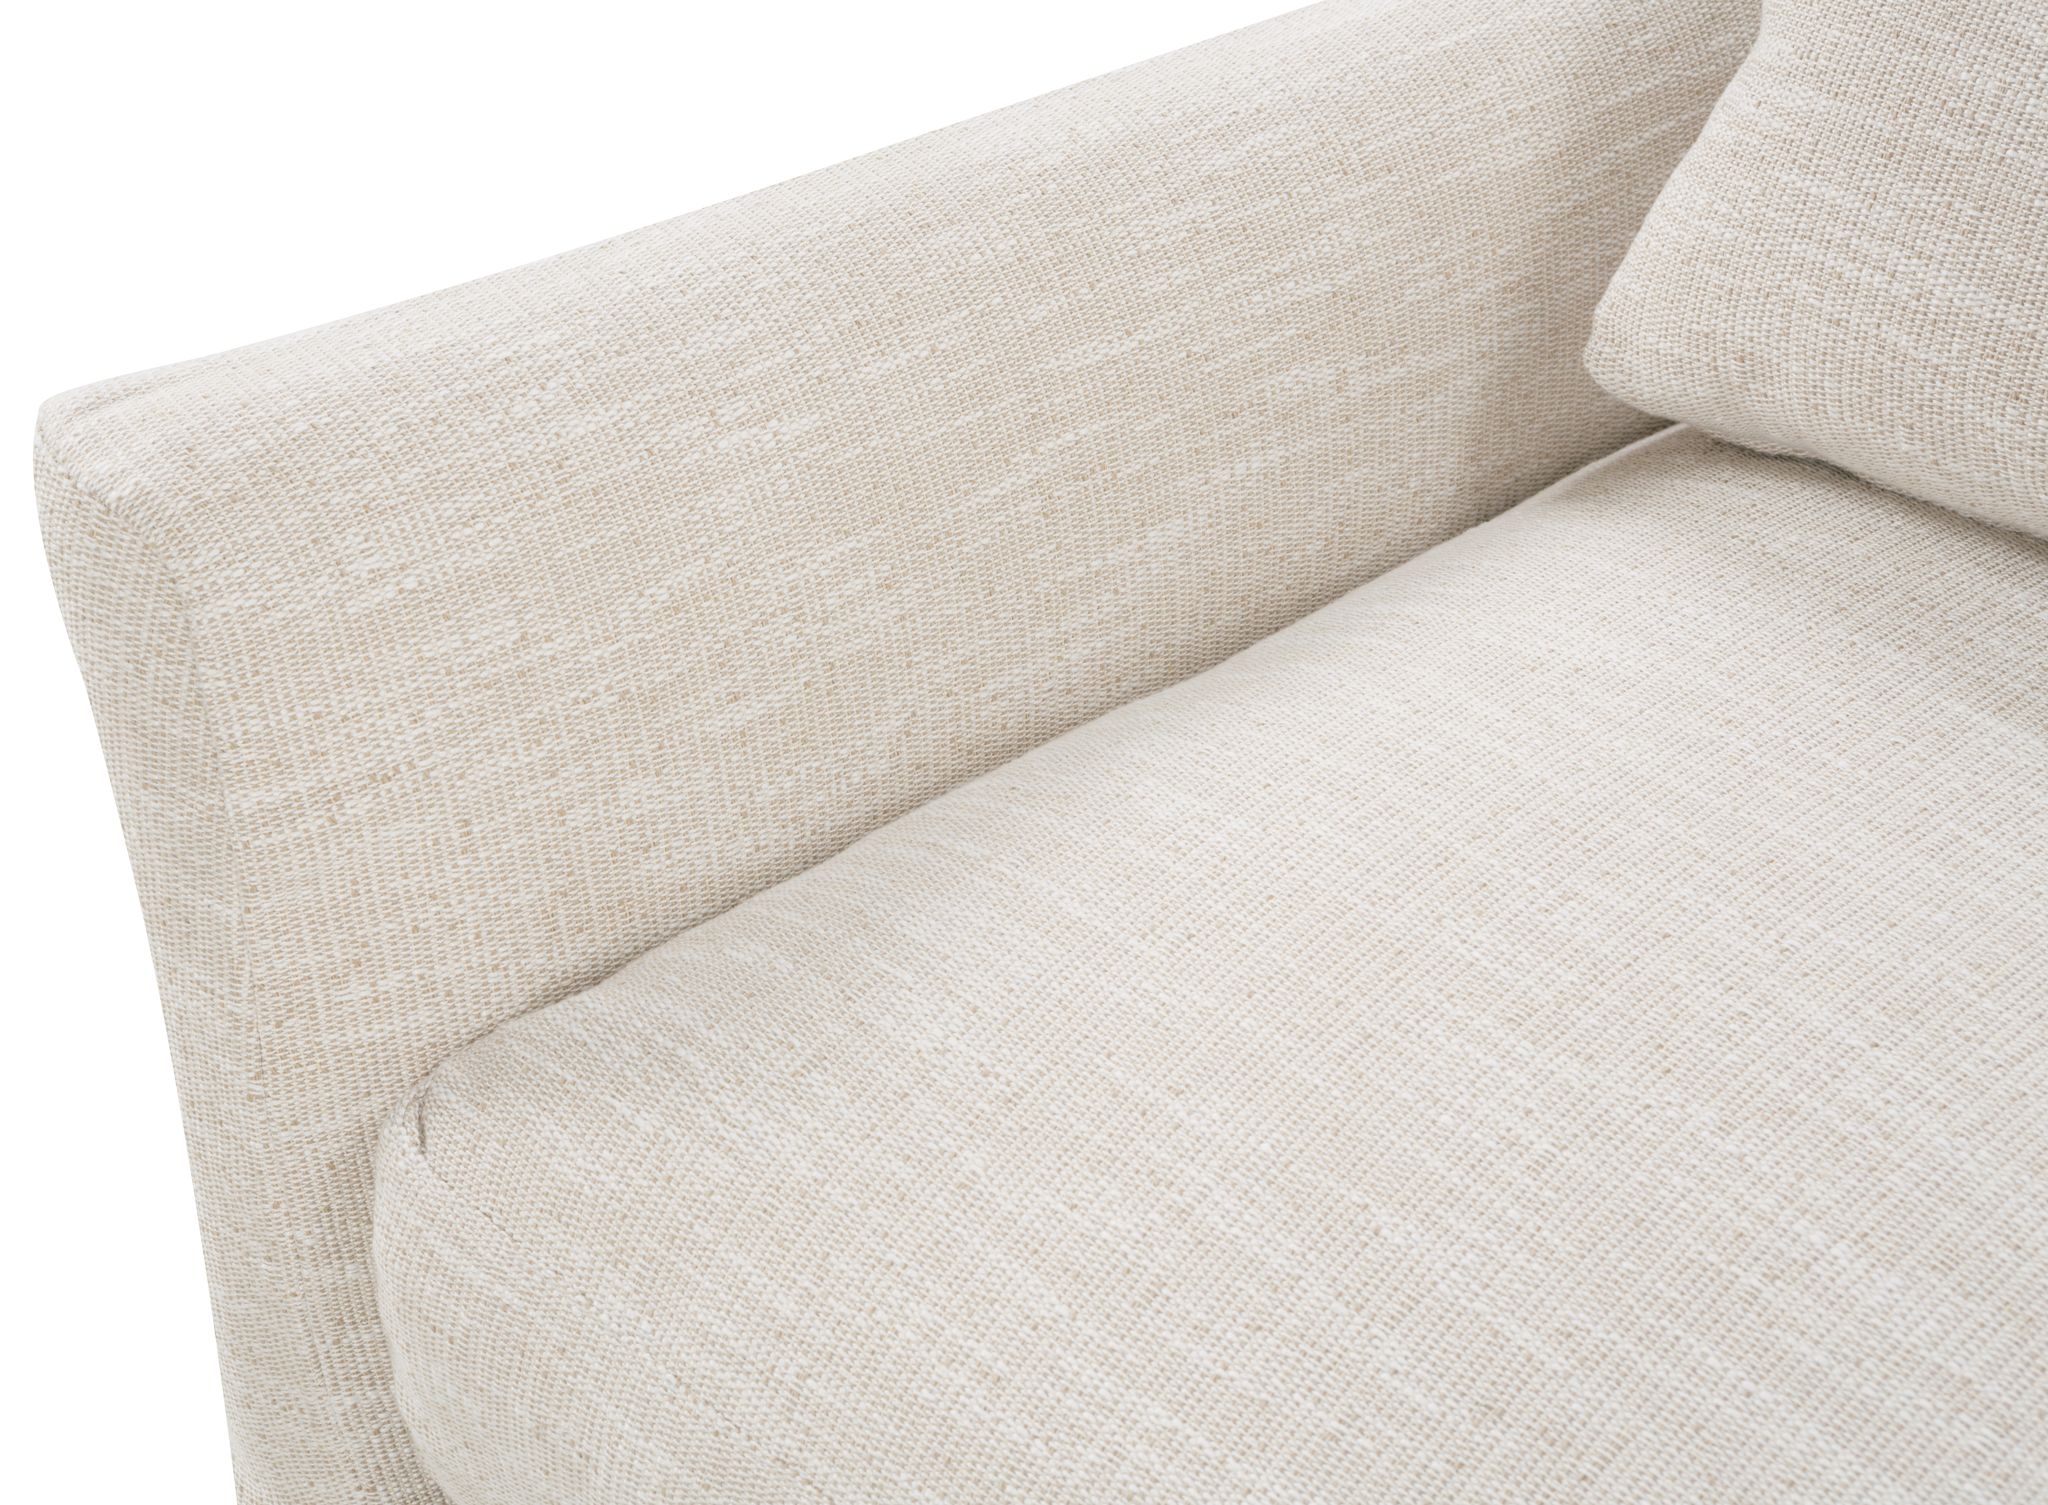 Moreau Slipcover Sofa, Bench Cushion, White, 95" - Image 11